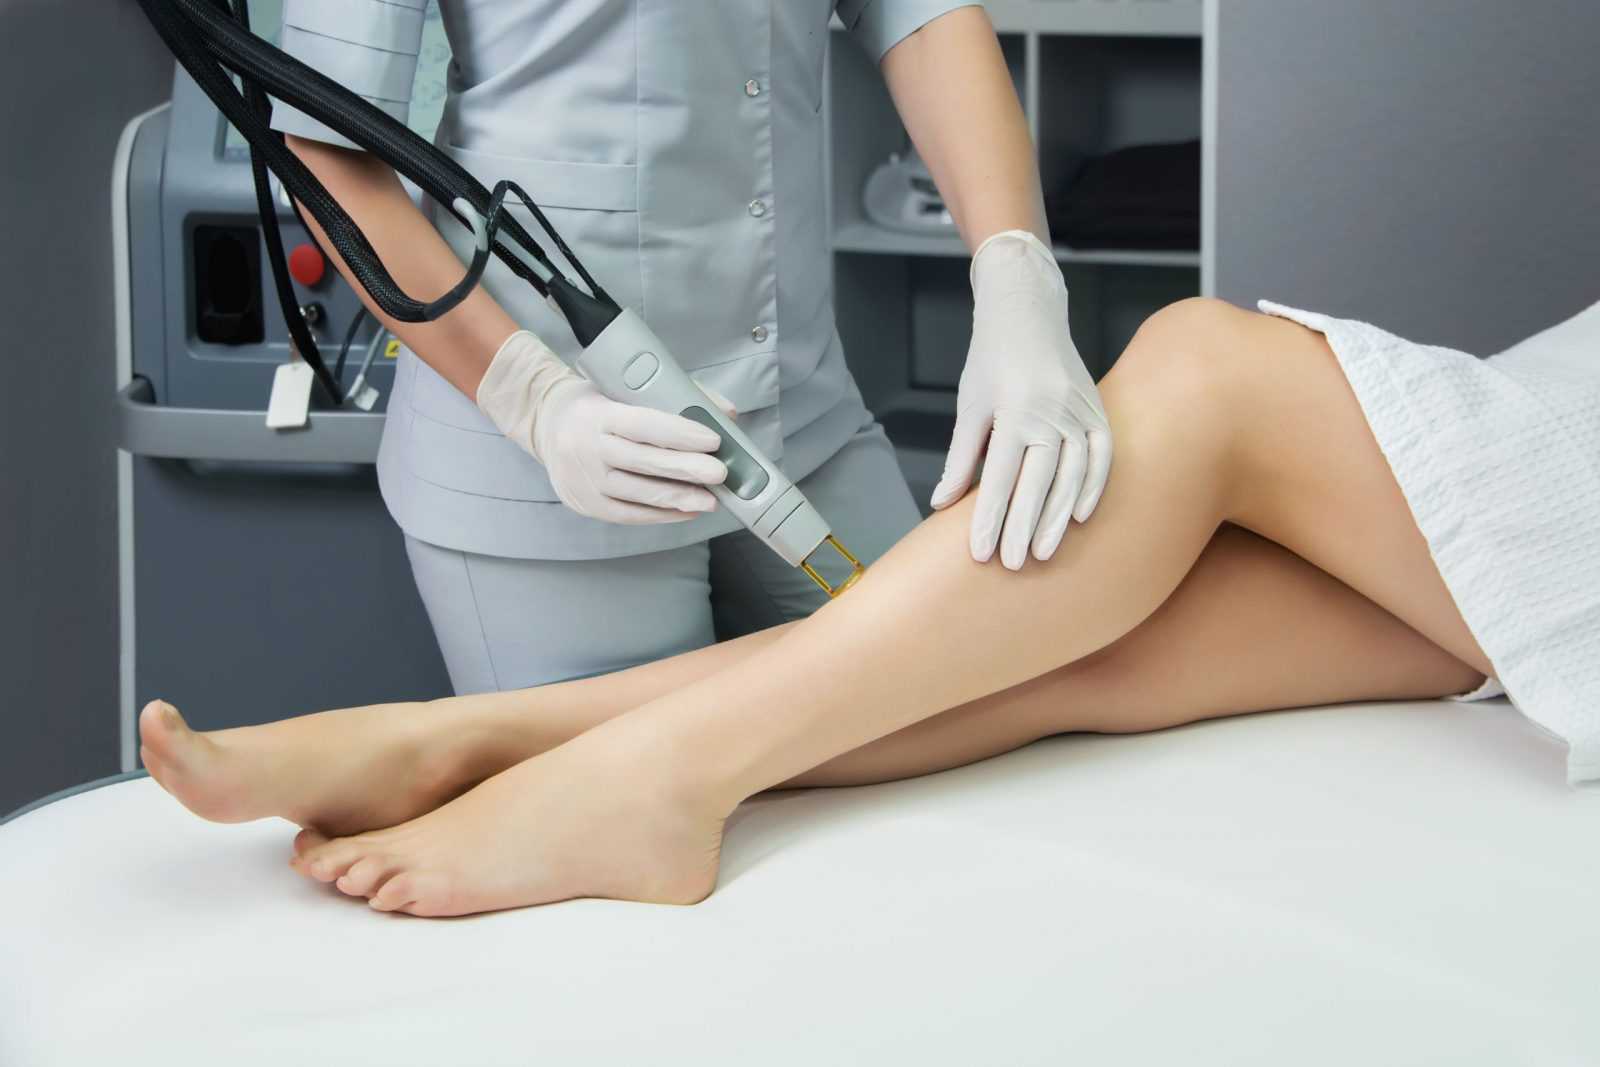 Лазерная эпиляция ног, голени, бедер: количество процедур